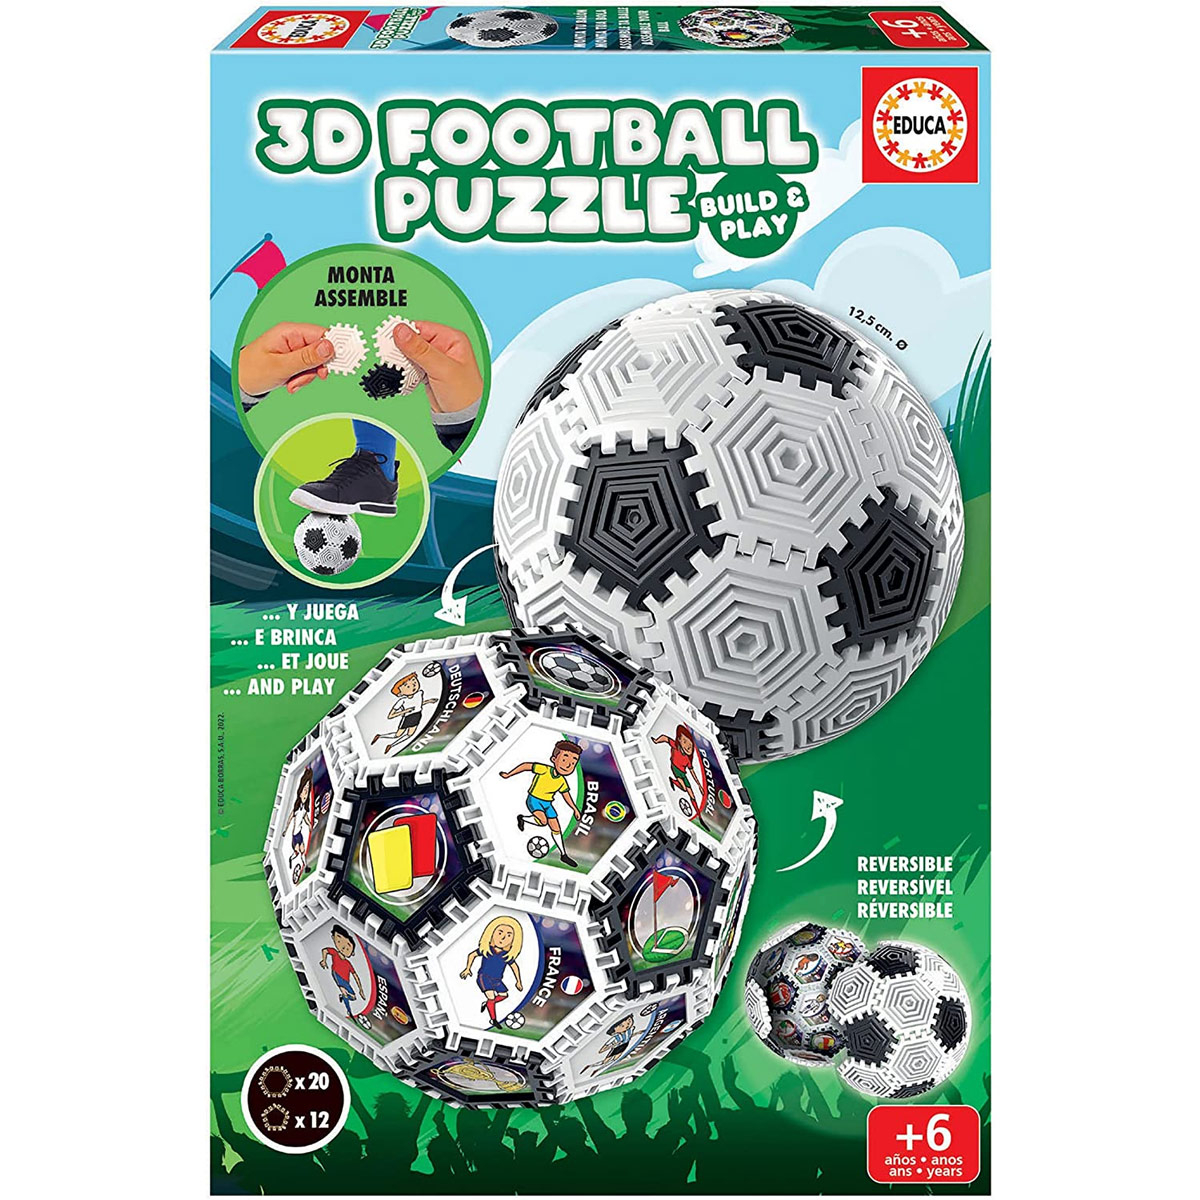 Puzzle 3D Bola 5-90 peças e conexões